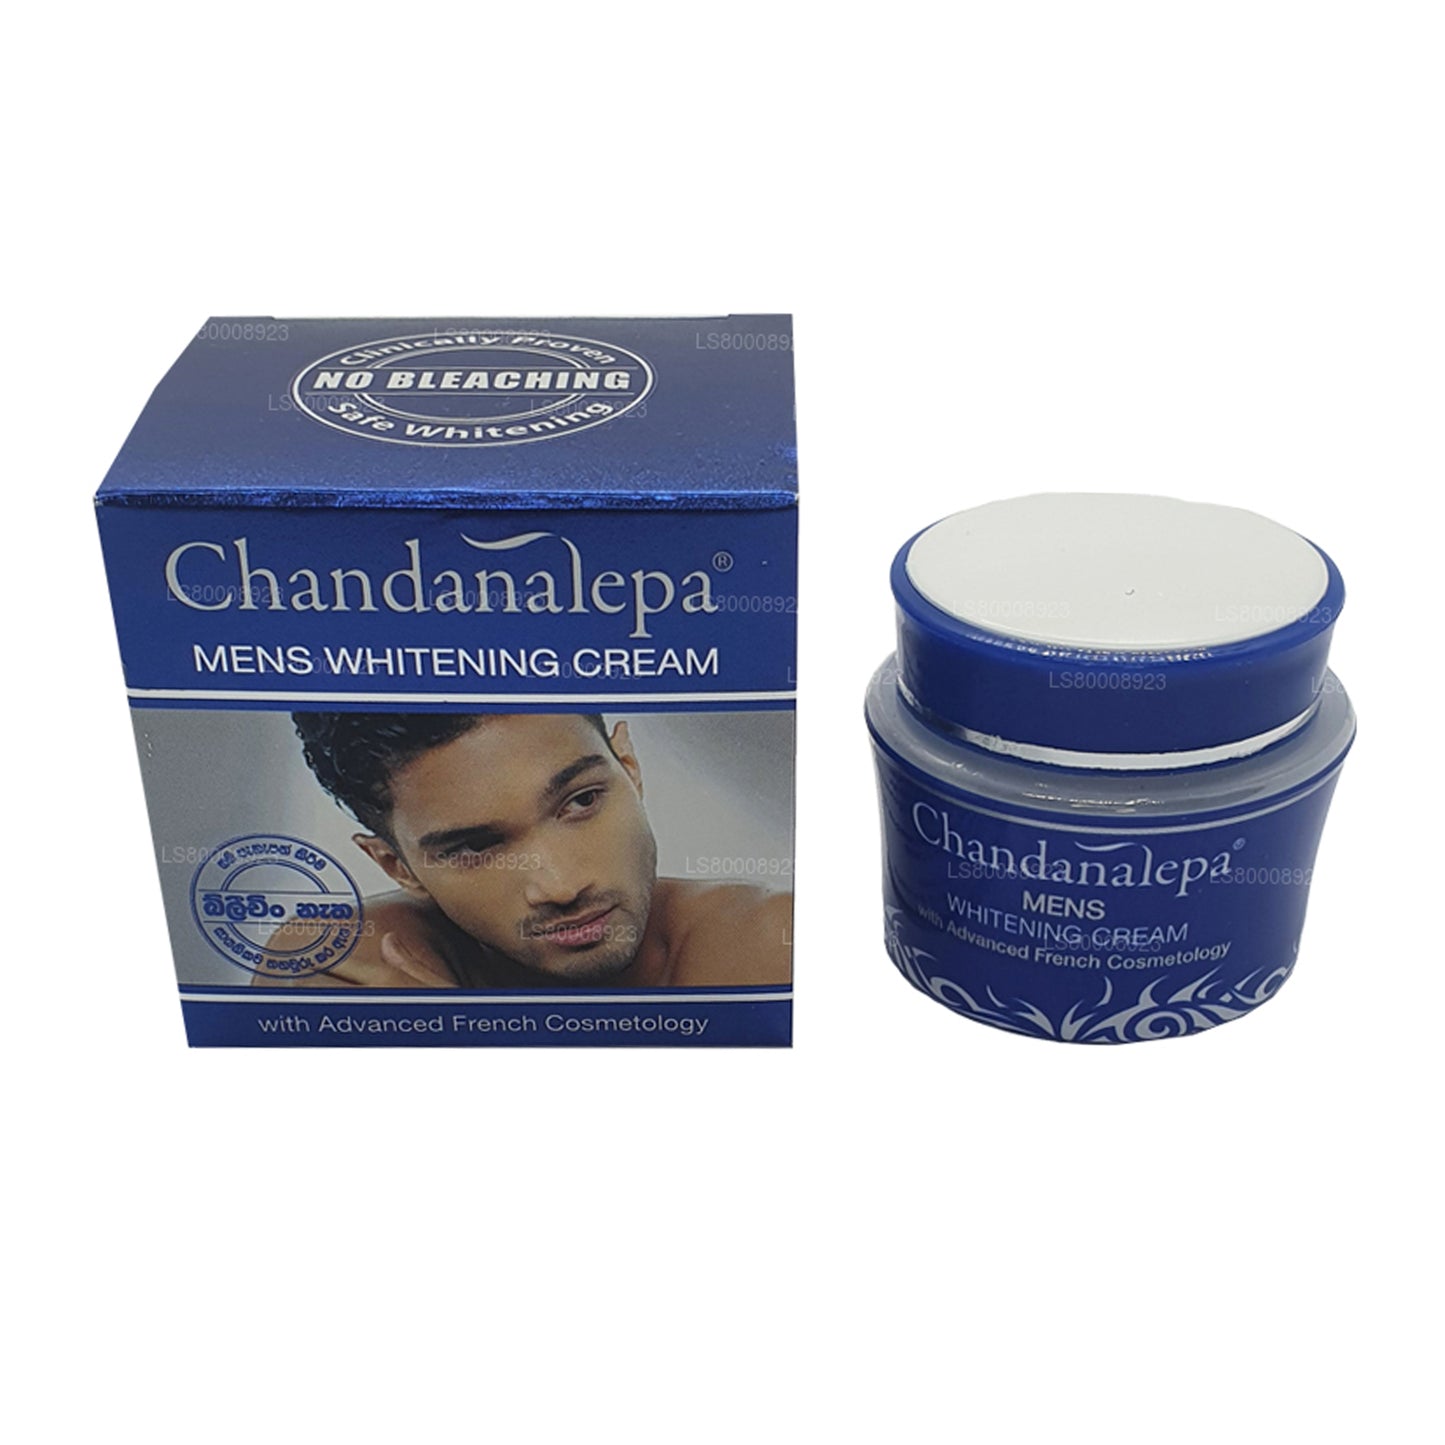 Crema blanqueadora para hombre Chandanalepa (20 g)